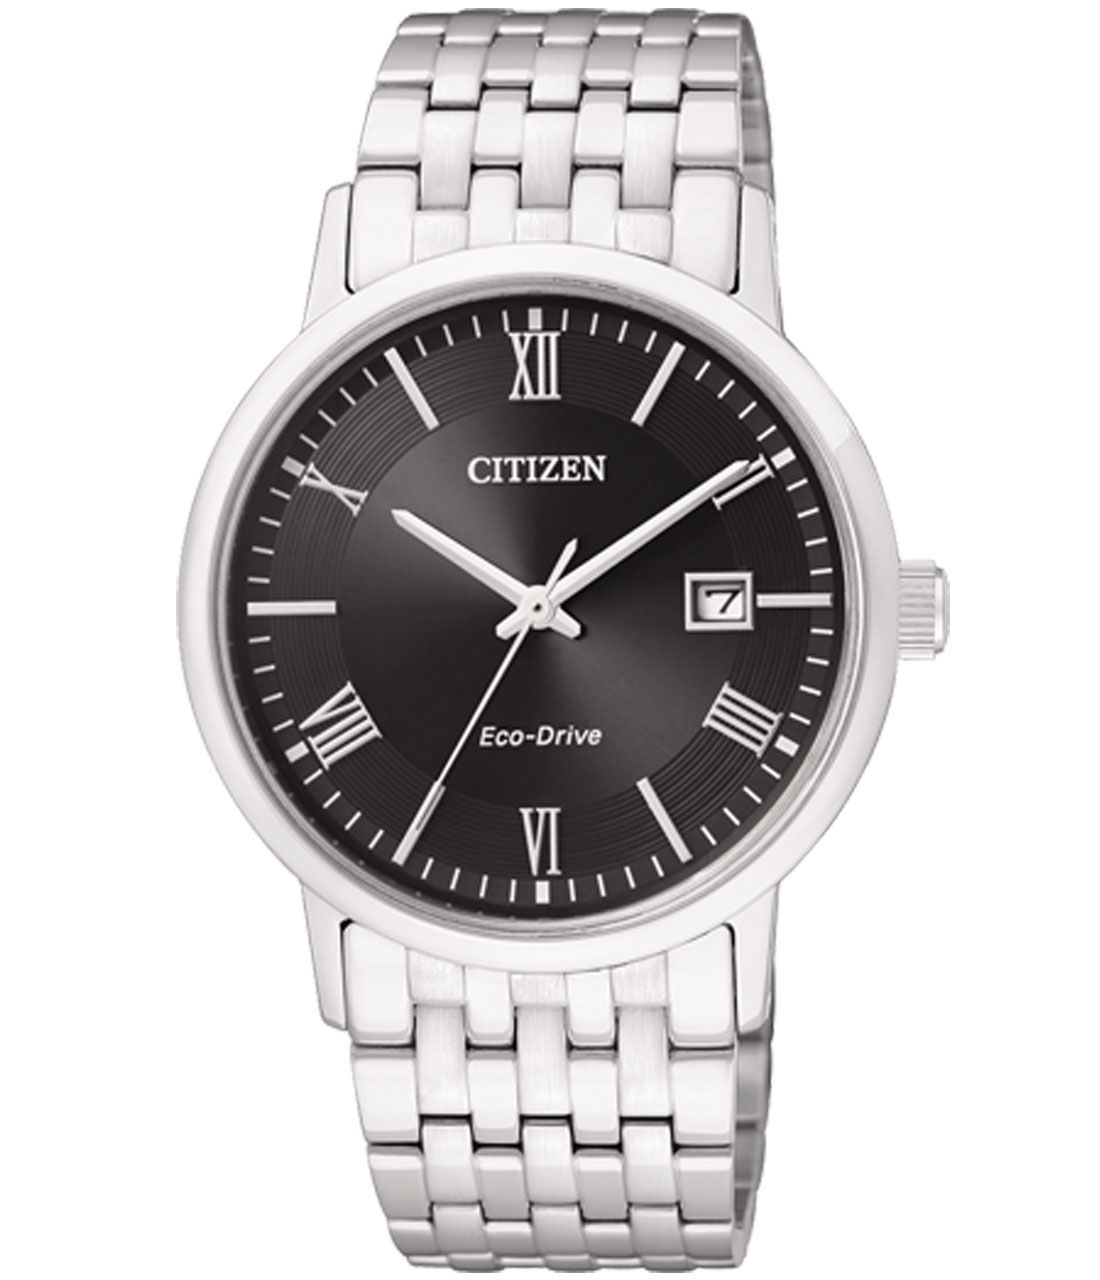 Đồng hồ nam BM6770-51E chính hãng Citizen